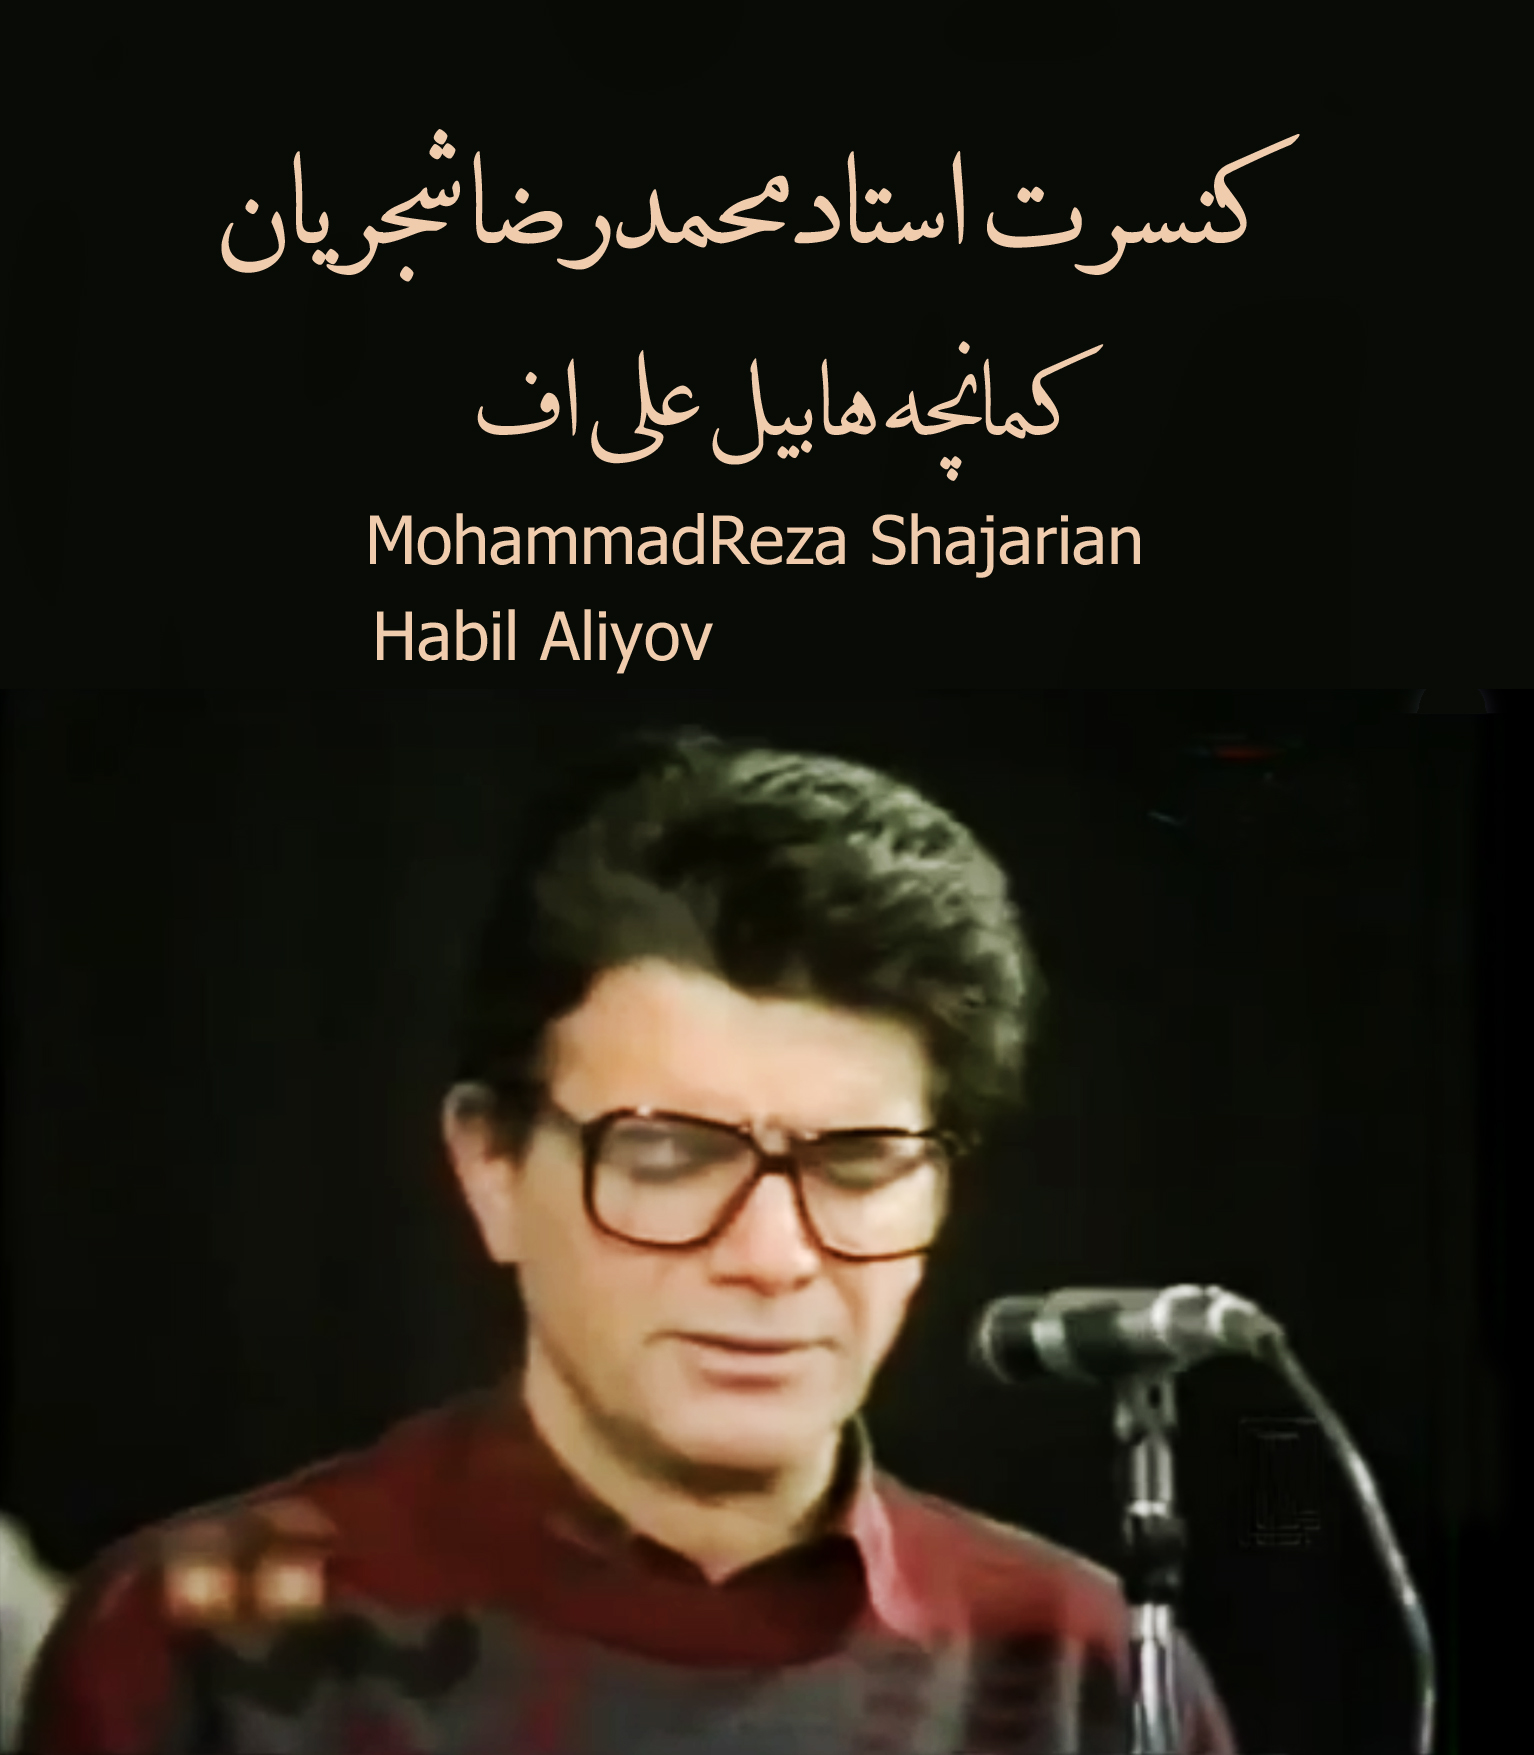 کنسرت استاد محمدرضا شجریان وهابیل علی اف